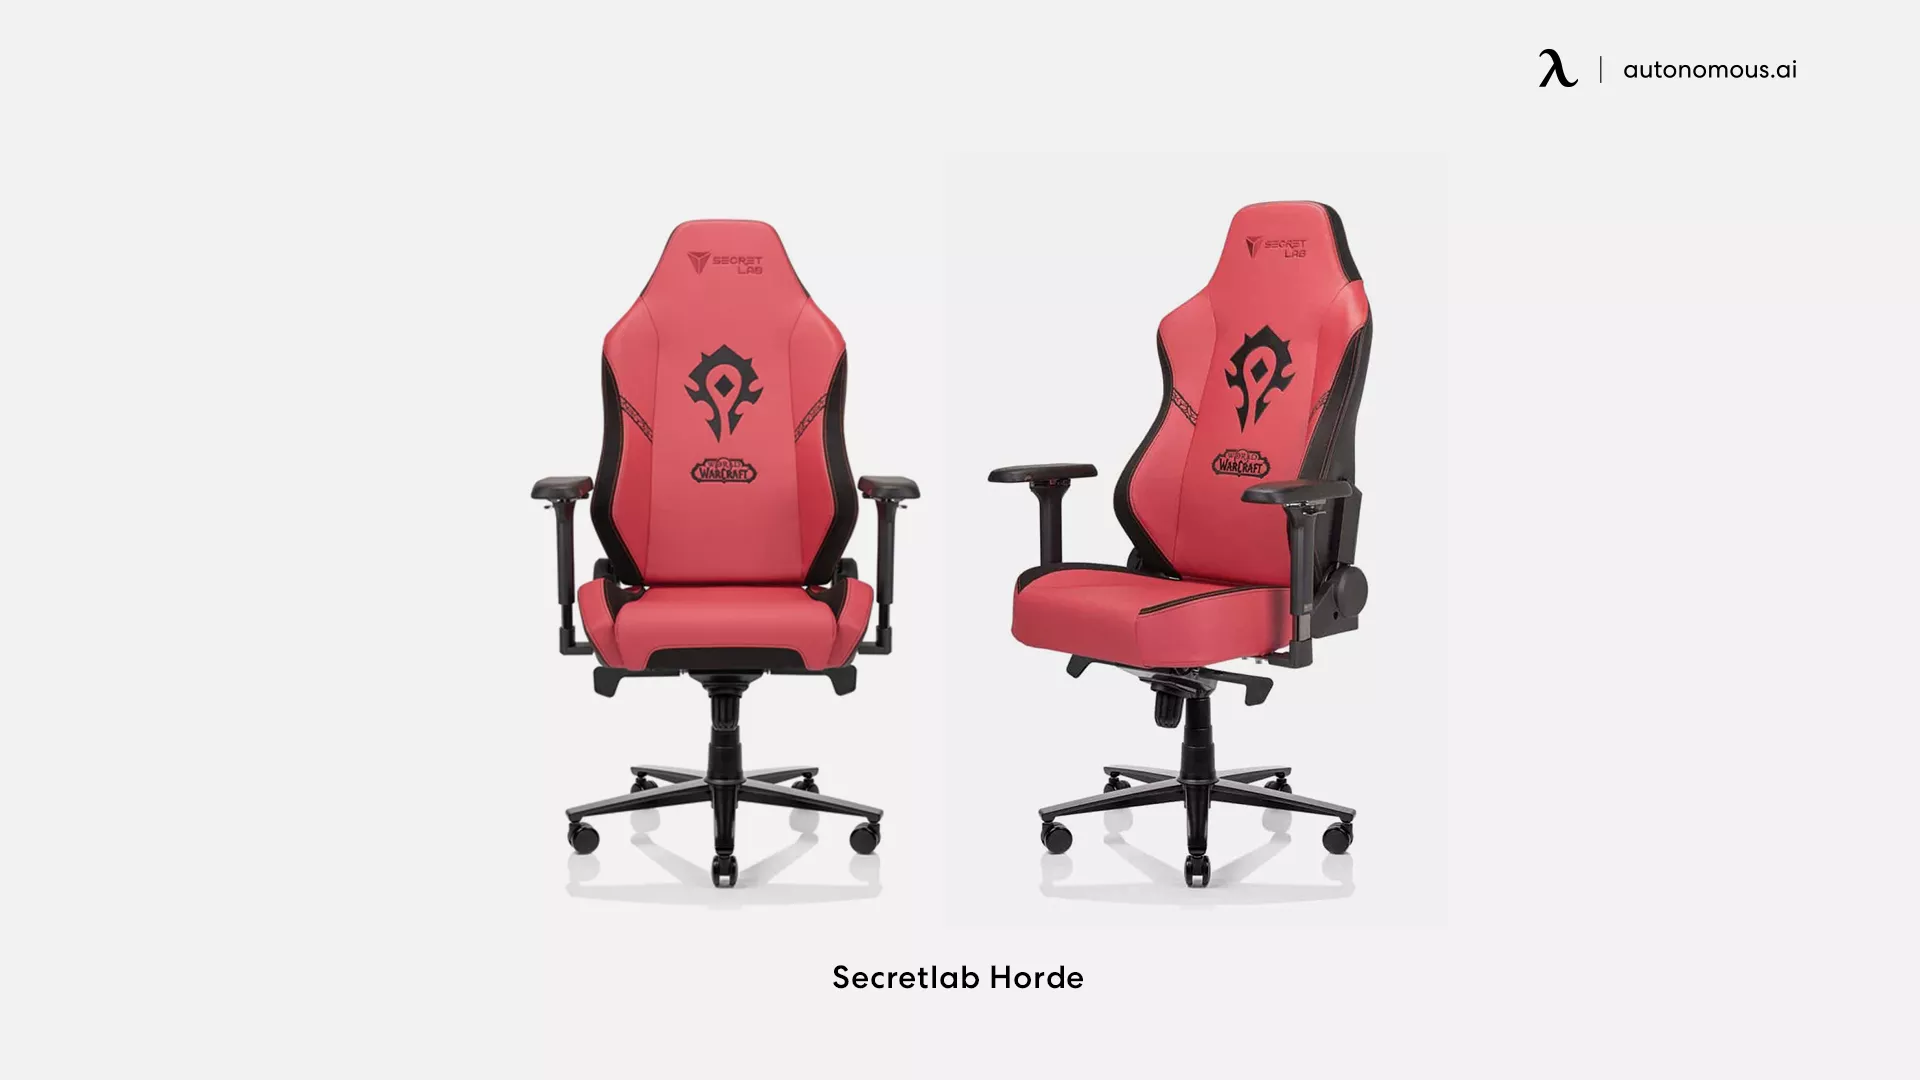 Secretlab Horde red gaming chair